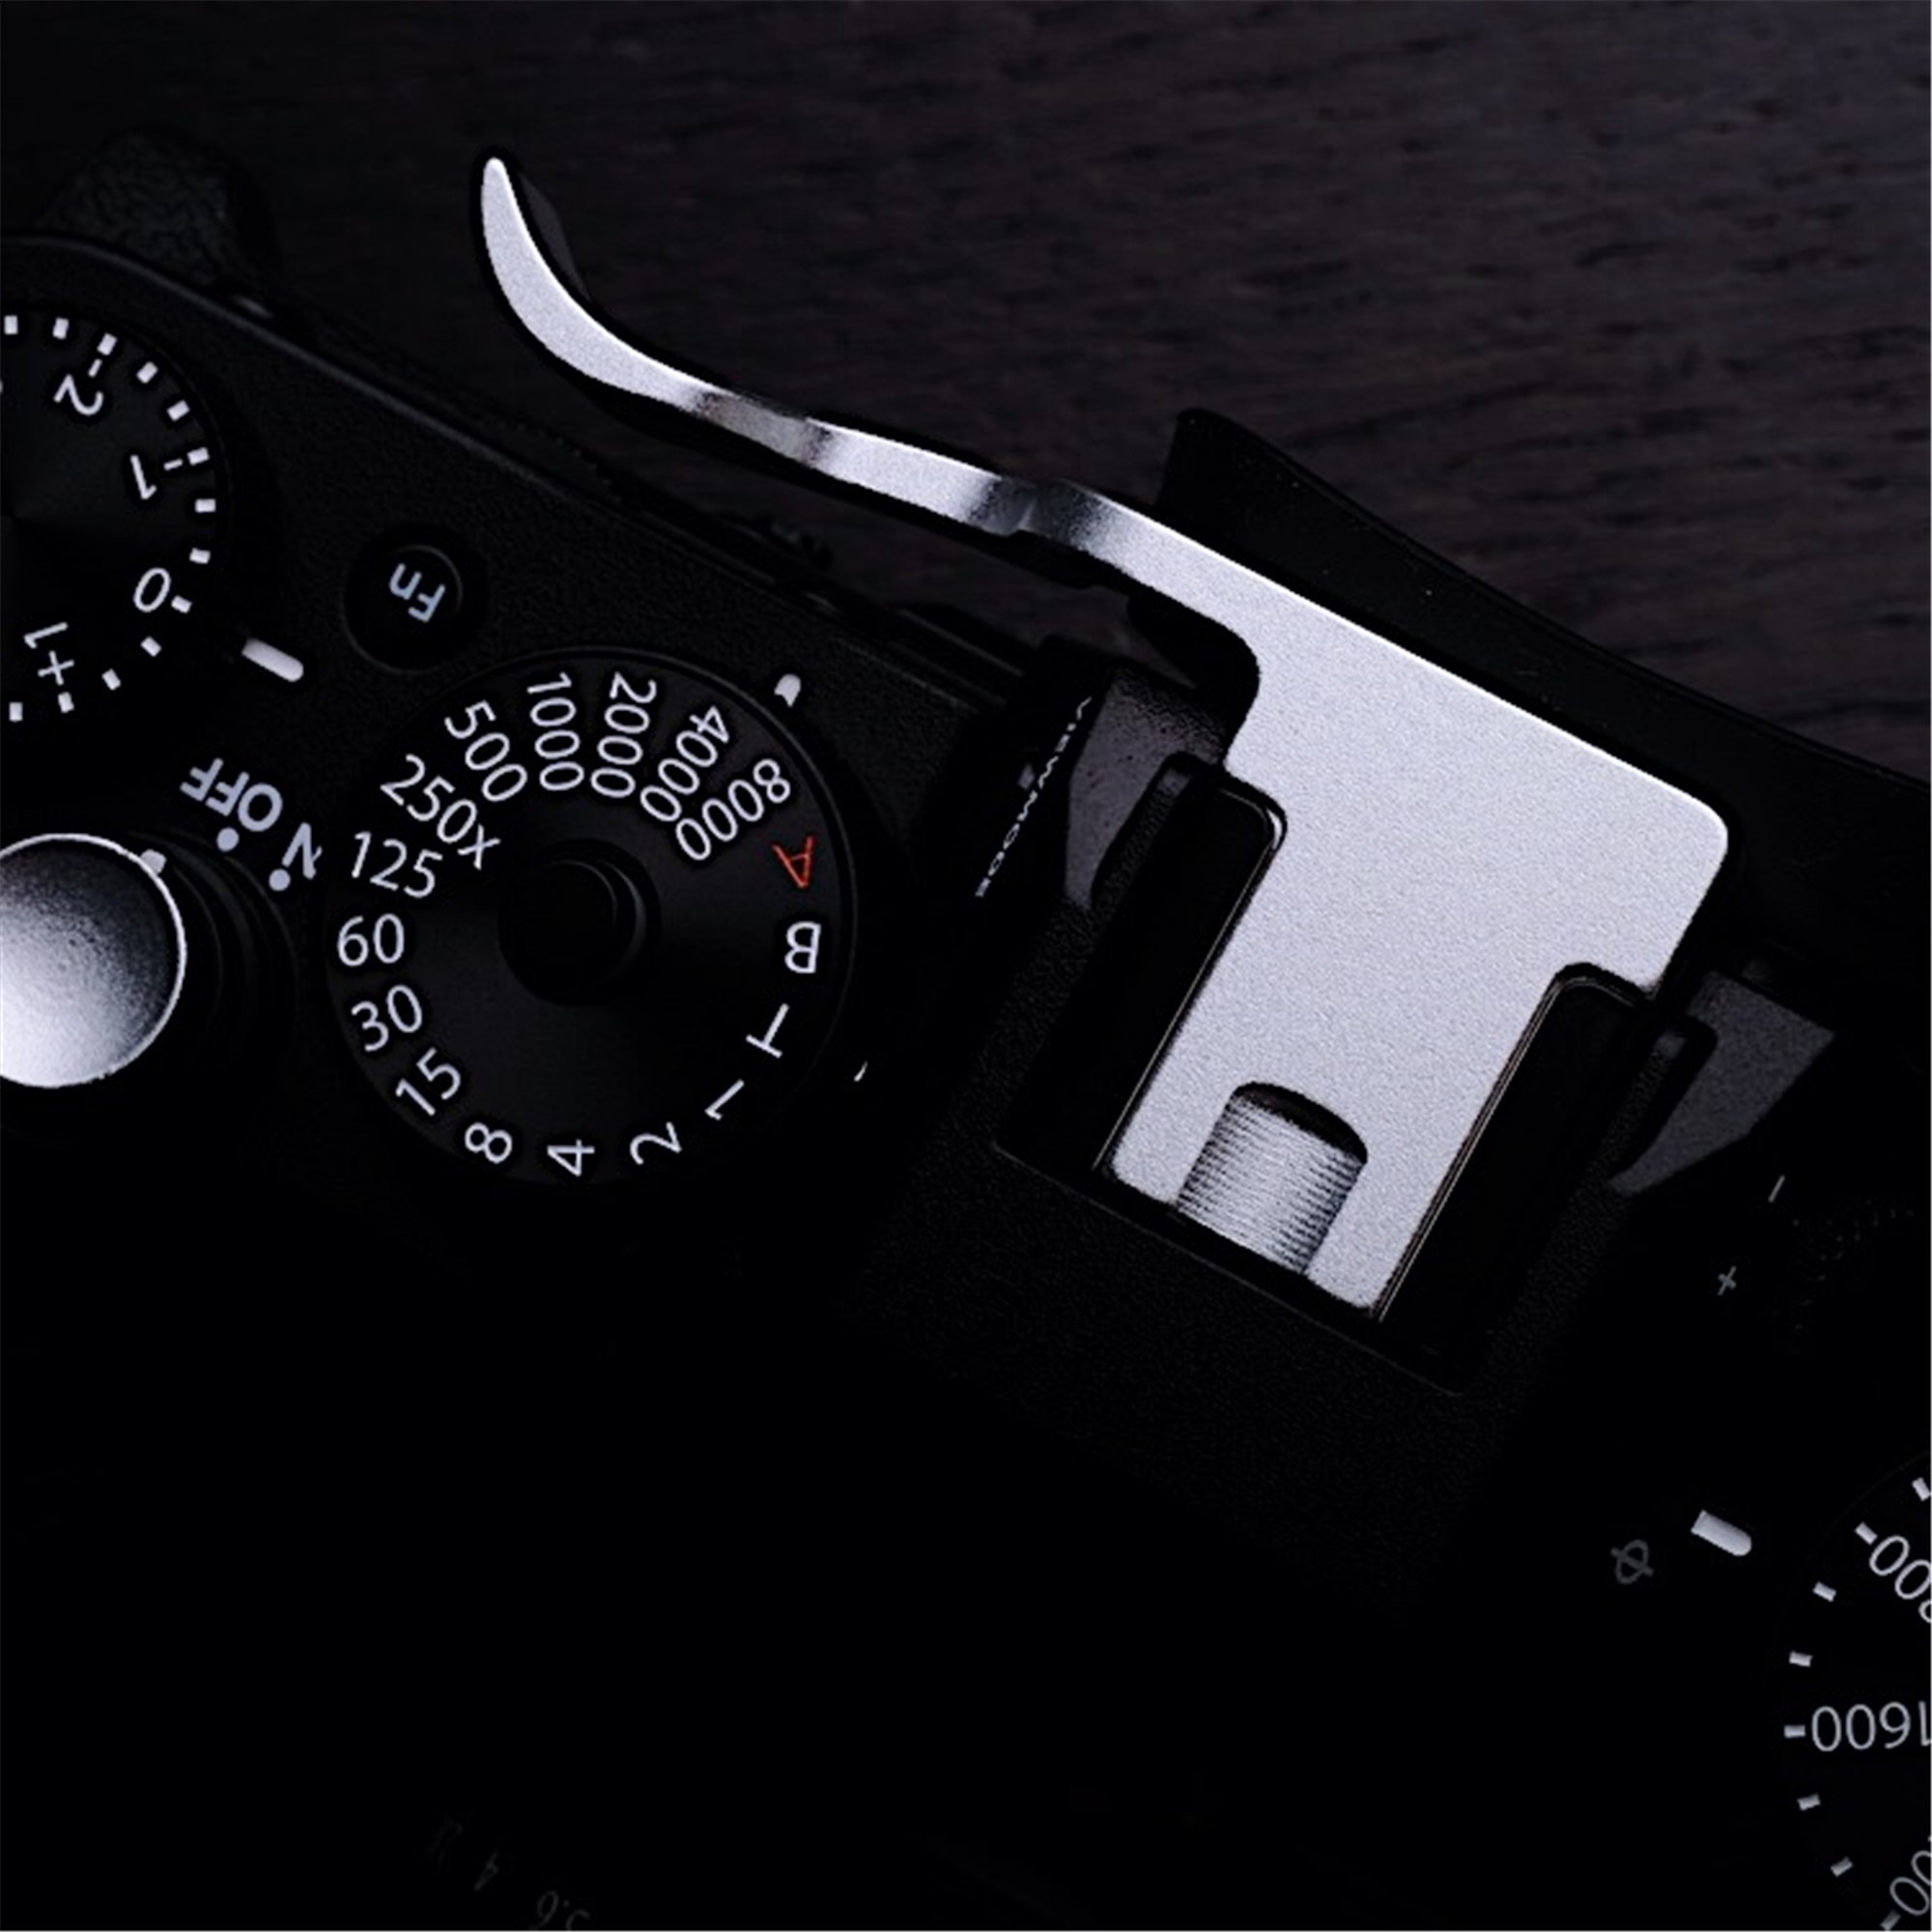 DUIMSTEUN Duim UP Thumb Grip Voor Fuji XT20 XT10 Fujifilm X-T3 XT3 Mirrorless Digitale Camera